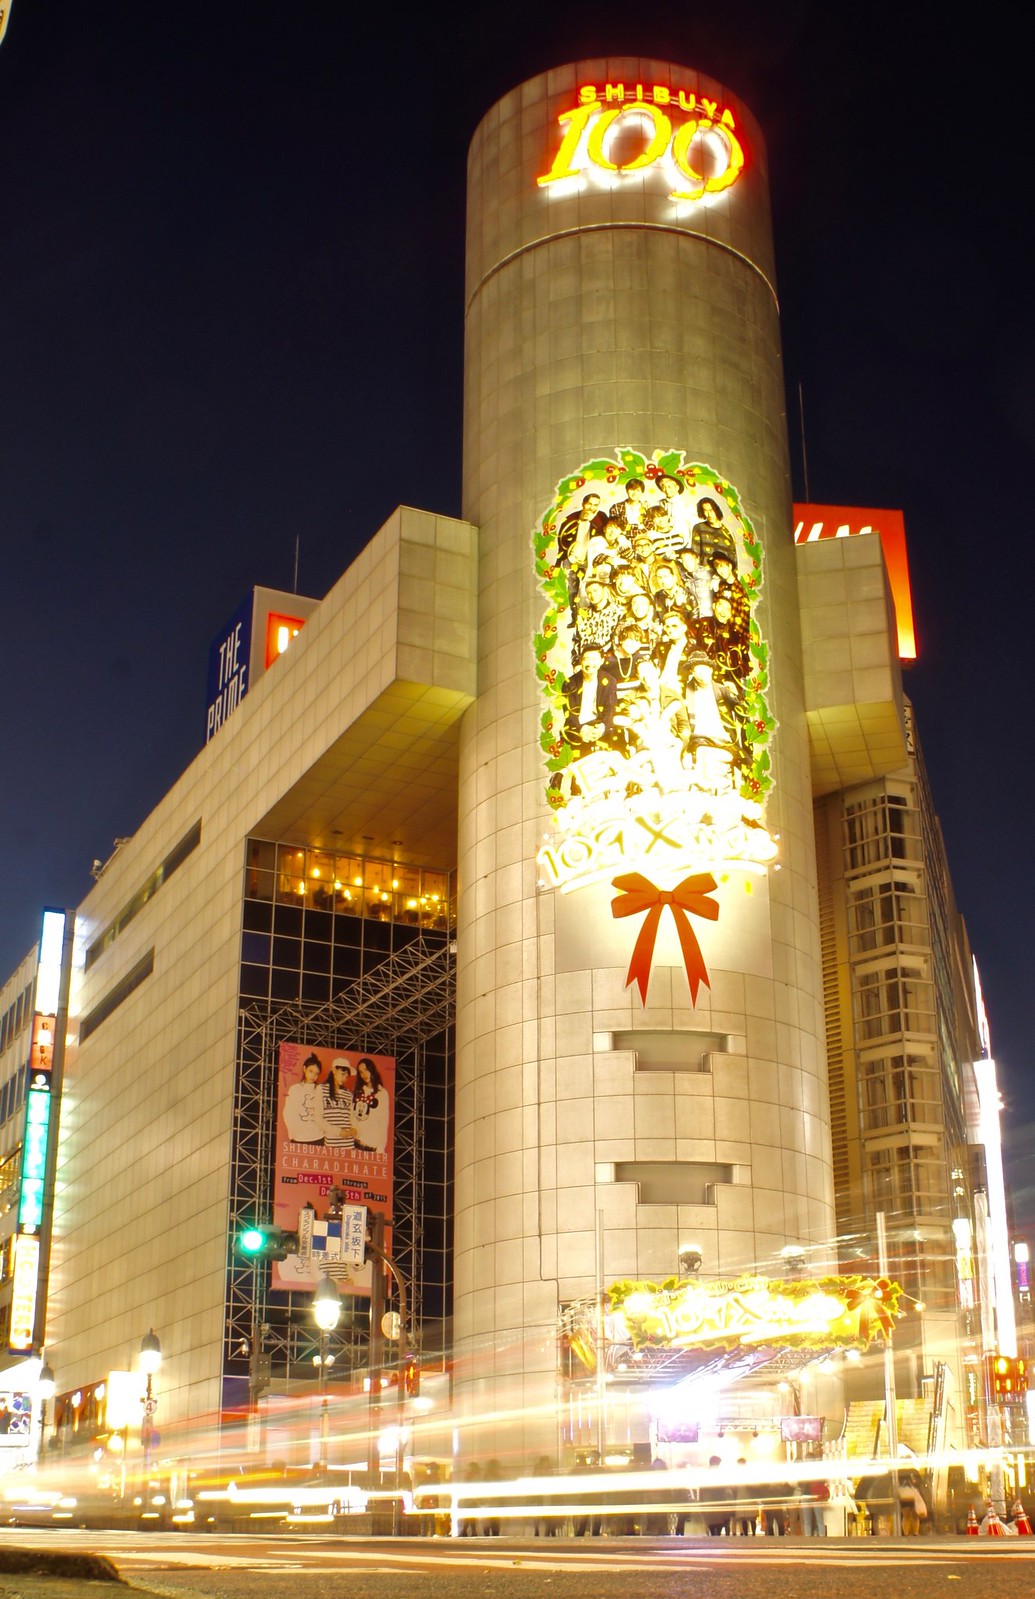 Shibuya 109 Christmas